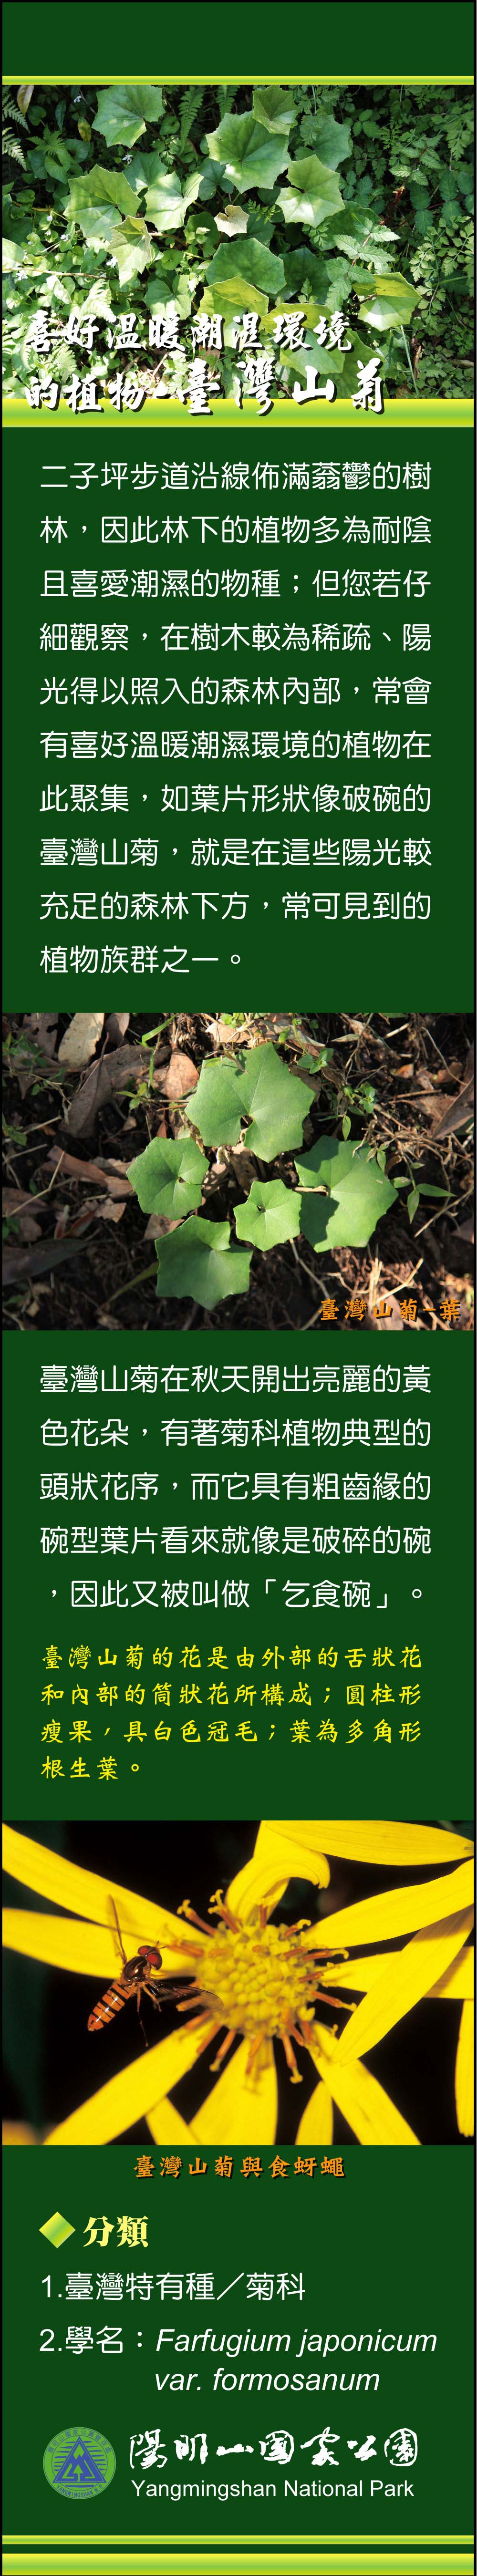 喜好溫暖潮濕環境的植物—臺灣山菊